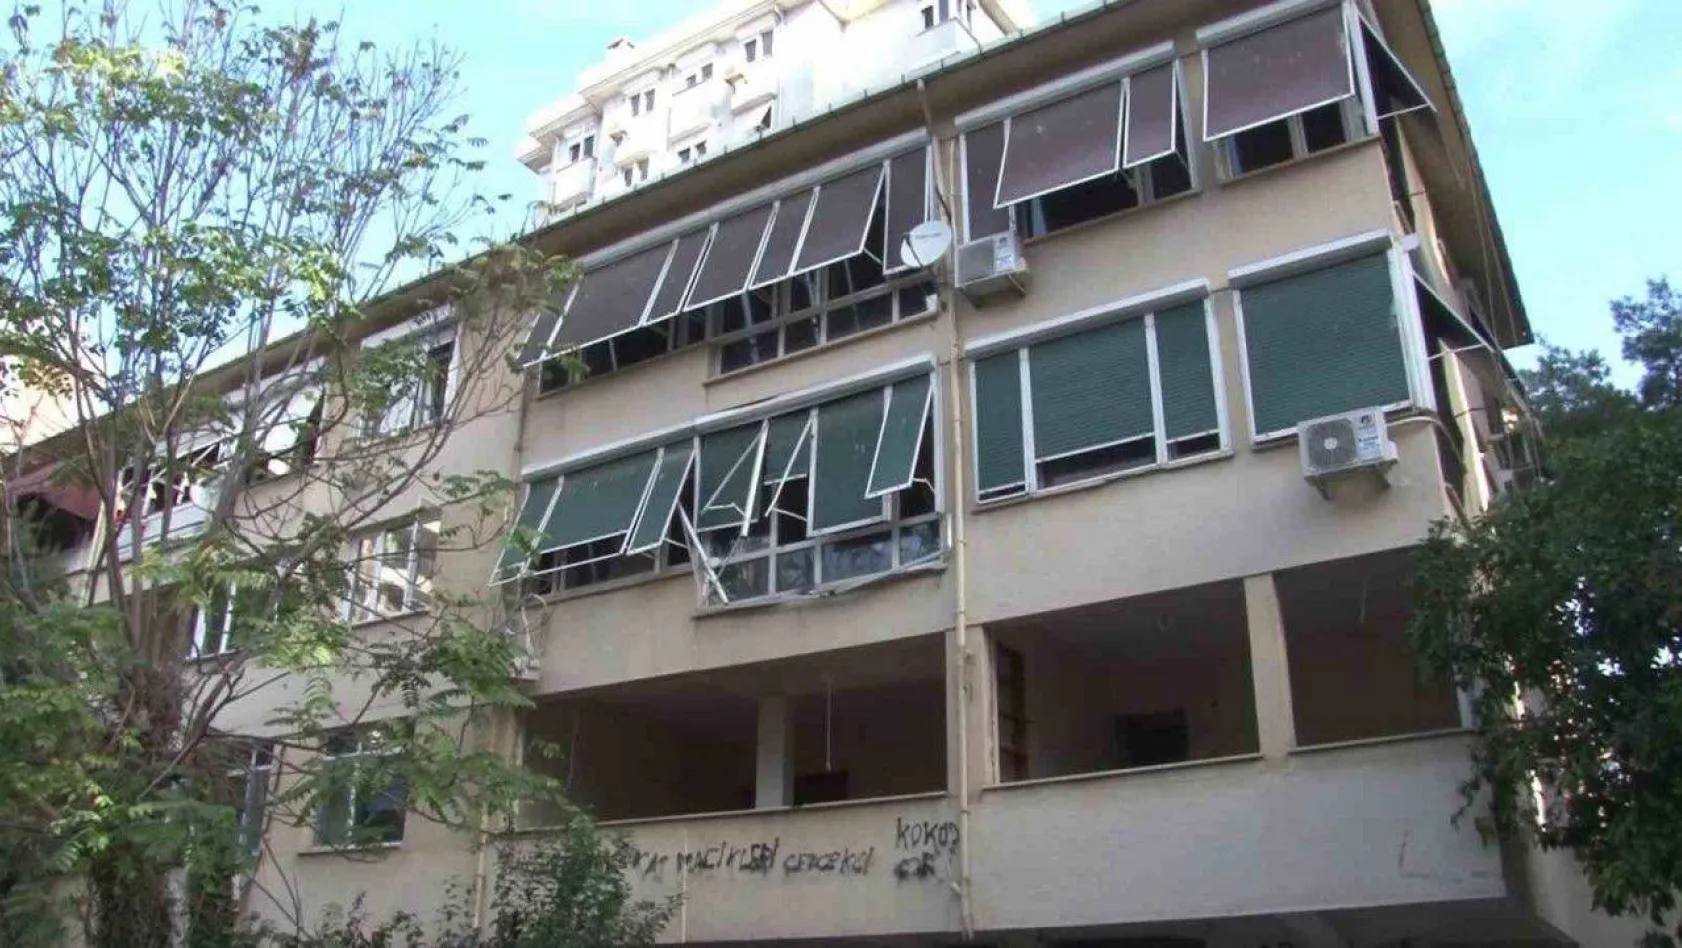 Kadıköy'de yıkılmayı bekleyen binaya defalarca hırsız girdi